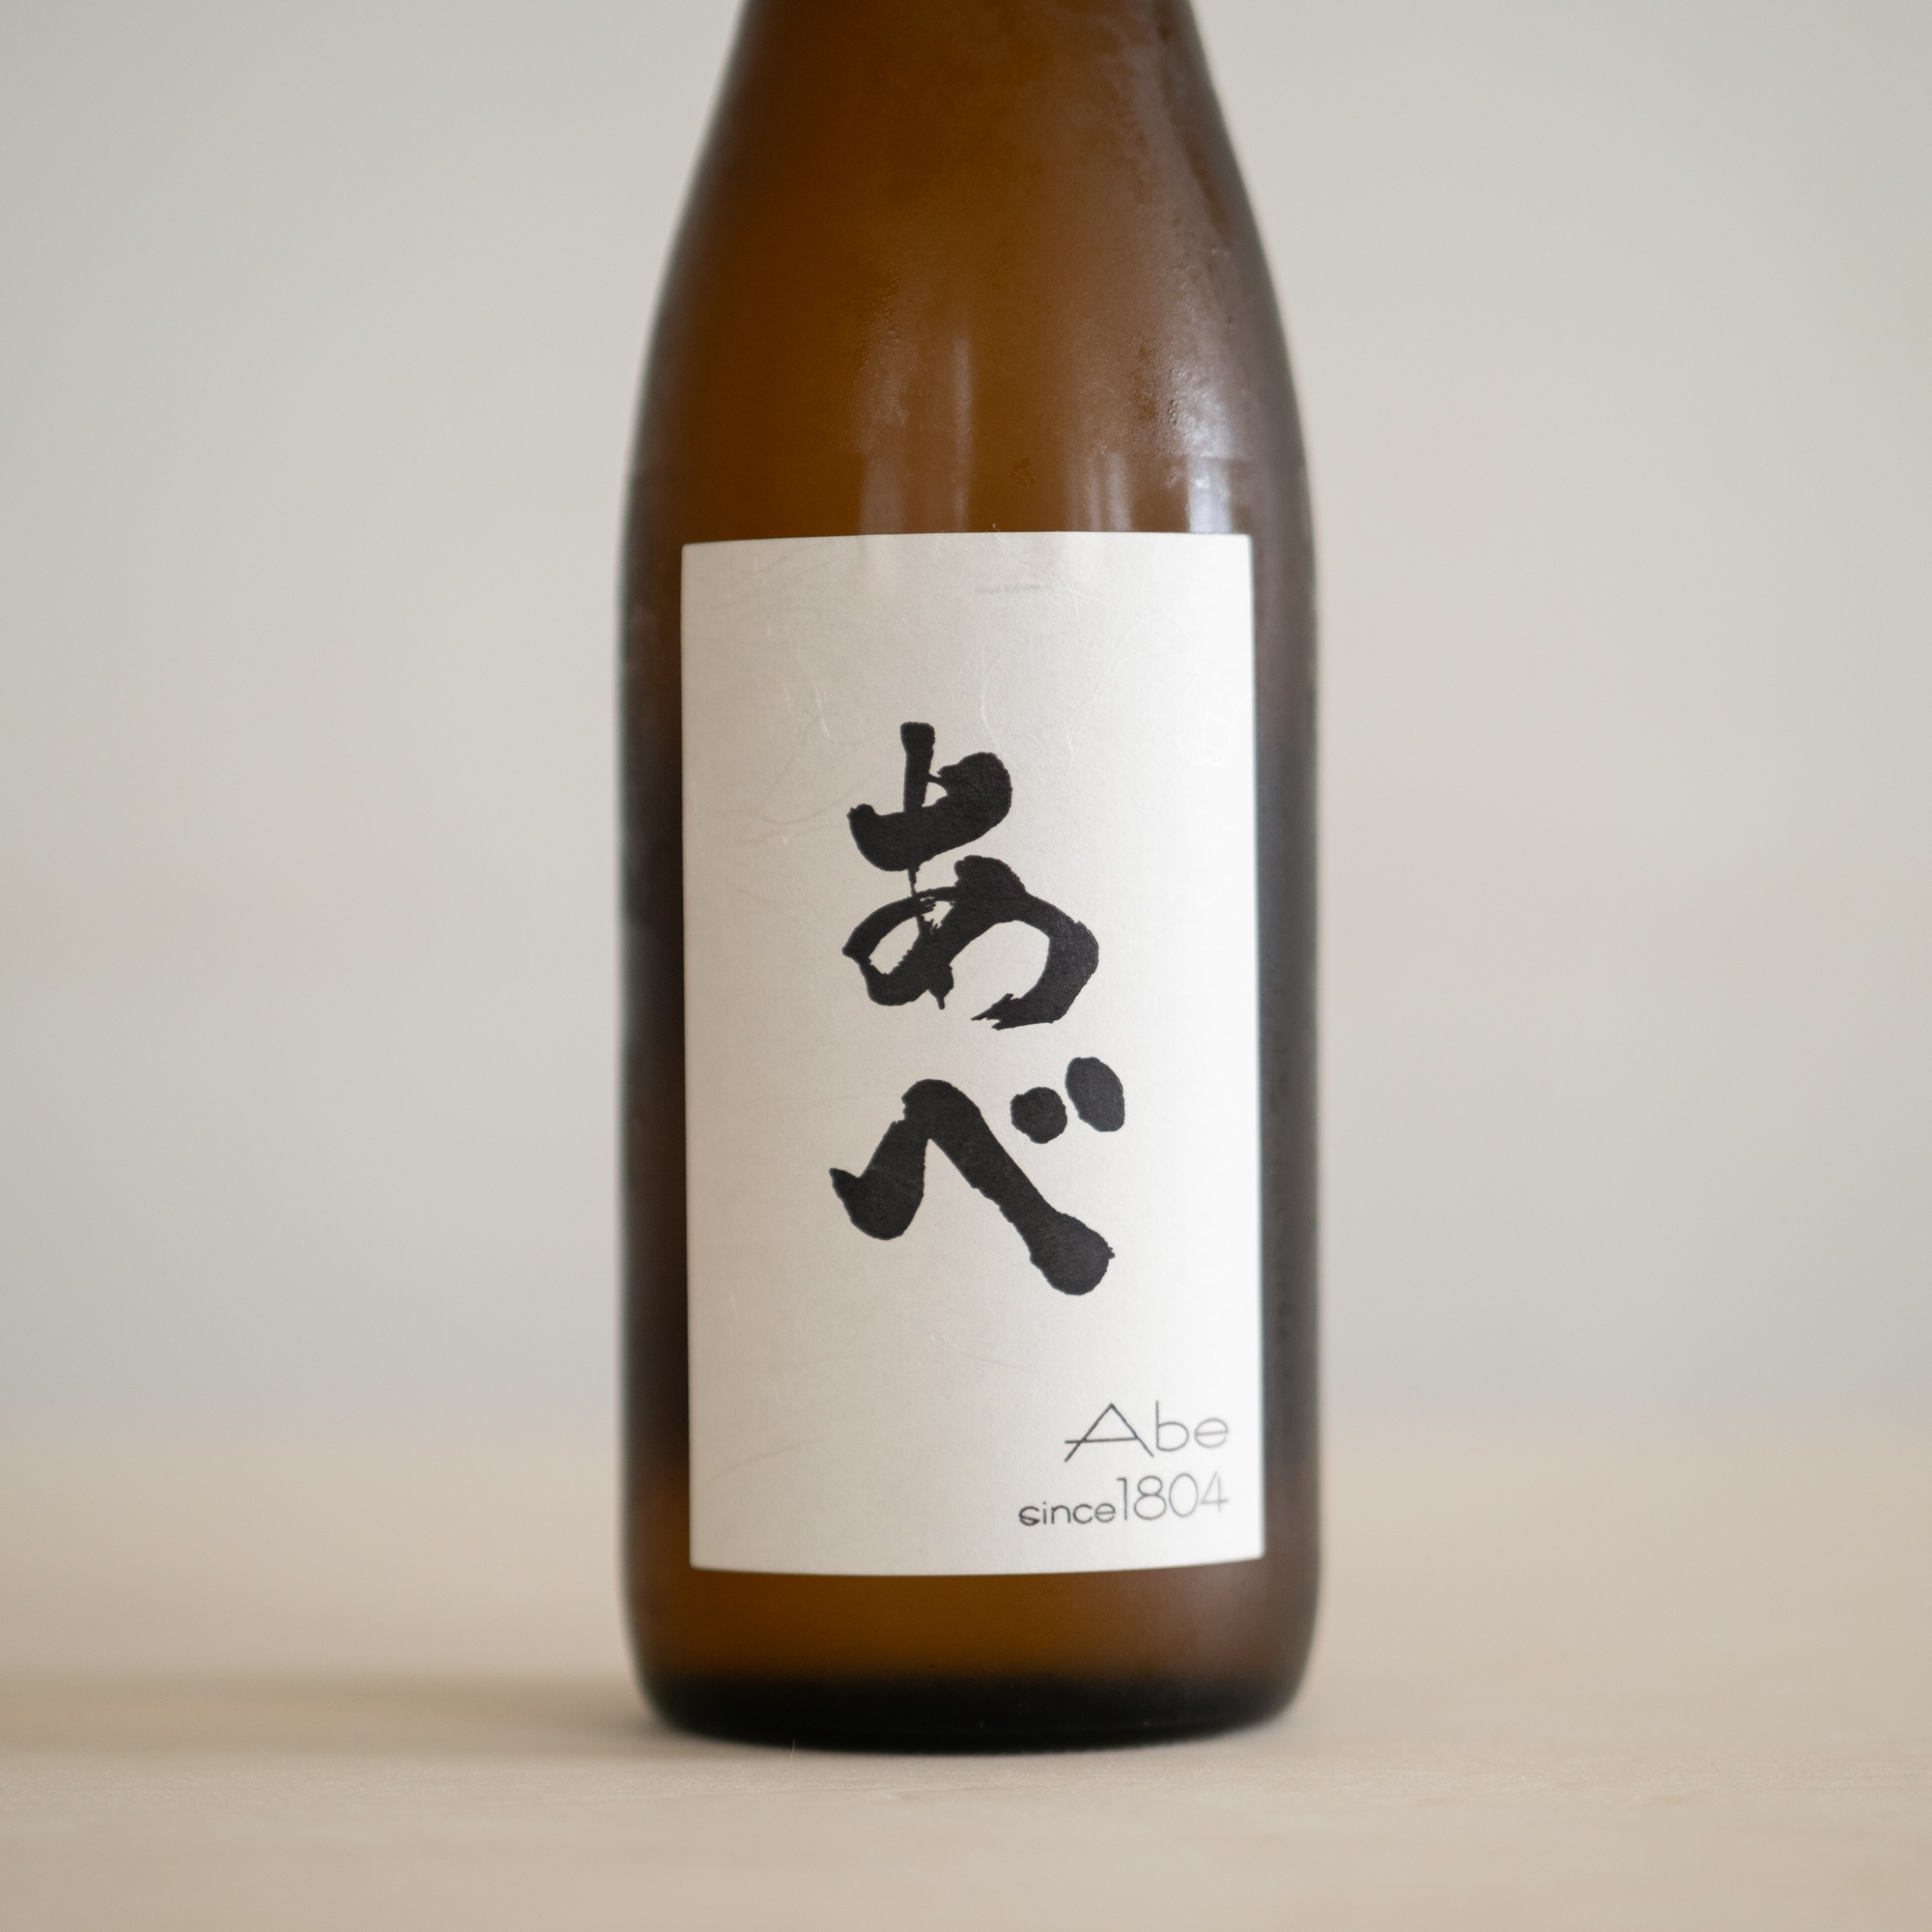 新潟県の小さな酒蔵で、代表銘柄は「越乃男山」。この「あべ」シリーズは6代目が立ち上げた新ブランドでラベルのカラーもいろいろ。「あべ 定番純米酒（通称ブラック）」720ml 1450円（税別・ひいな購入時価格）／阿部酒造株式会社